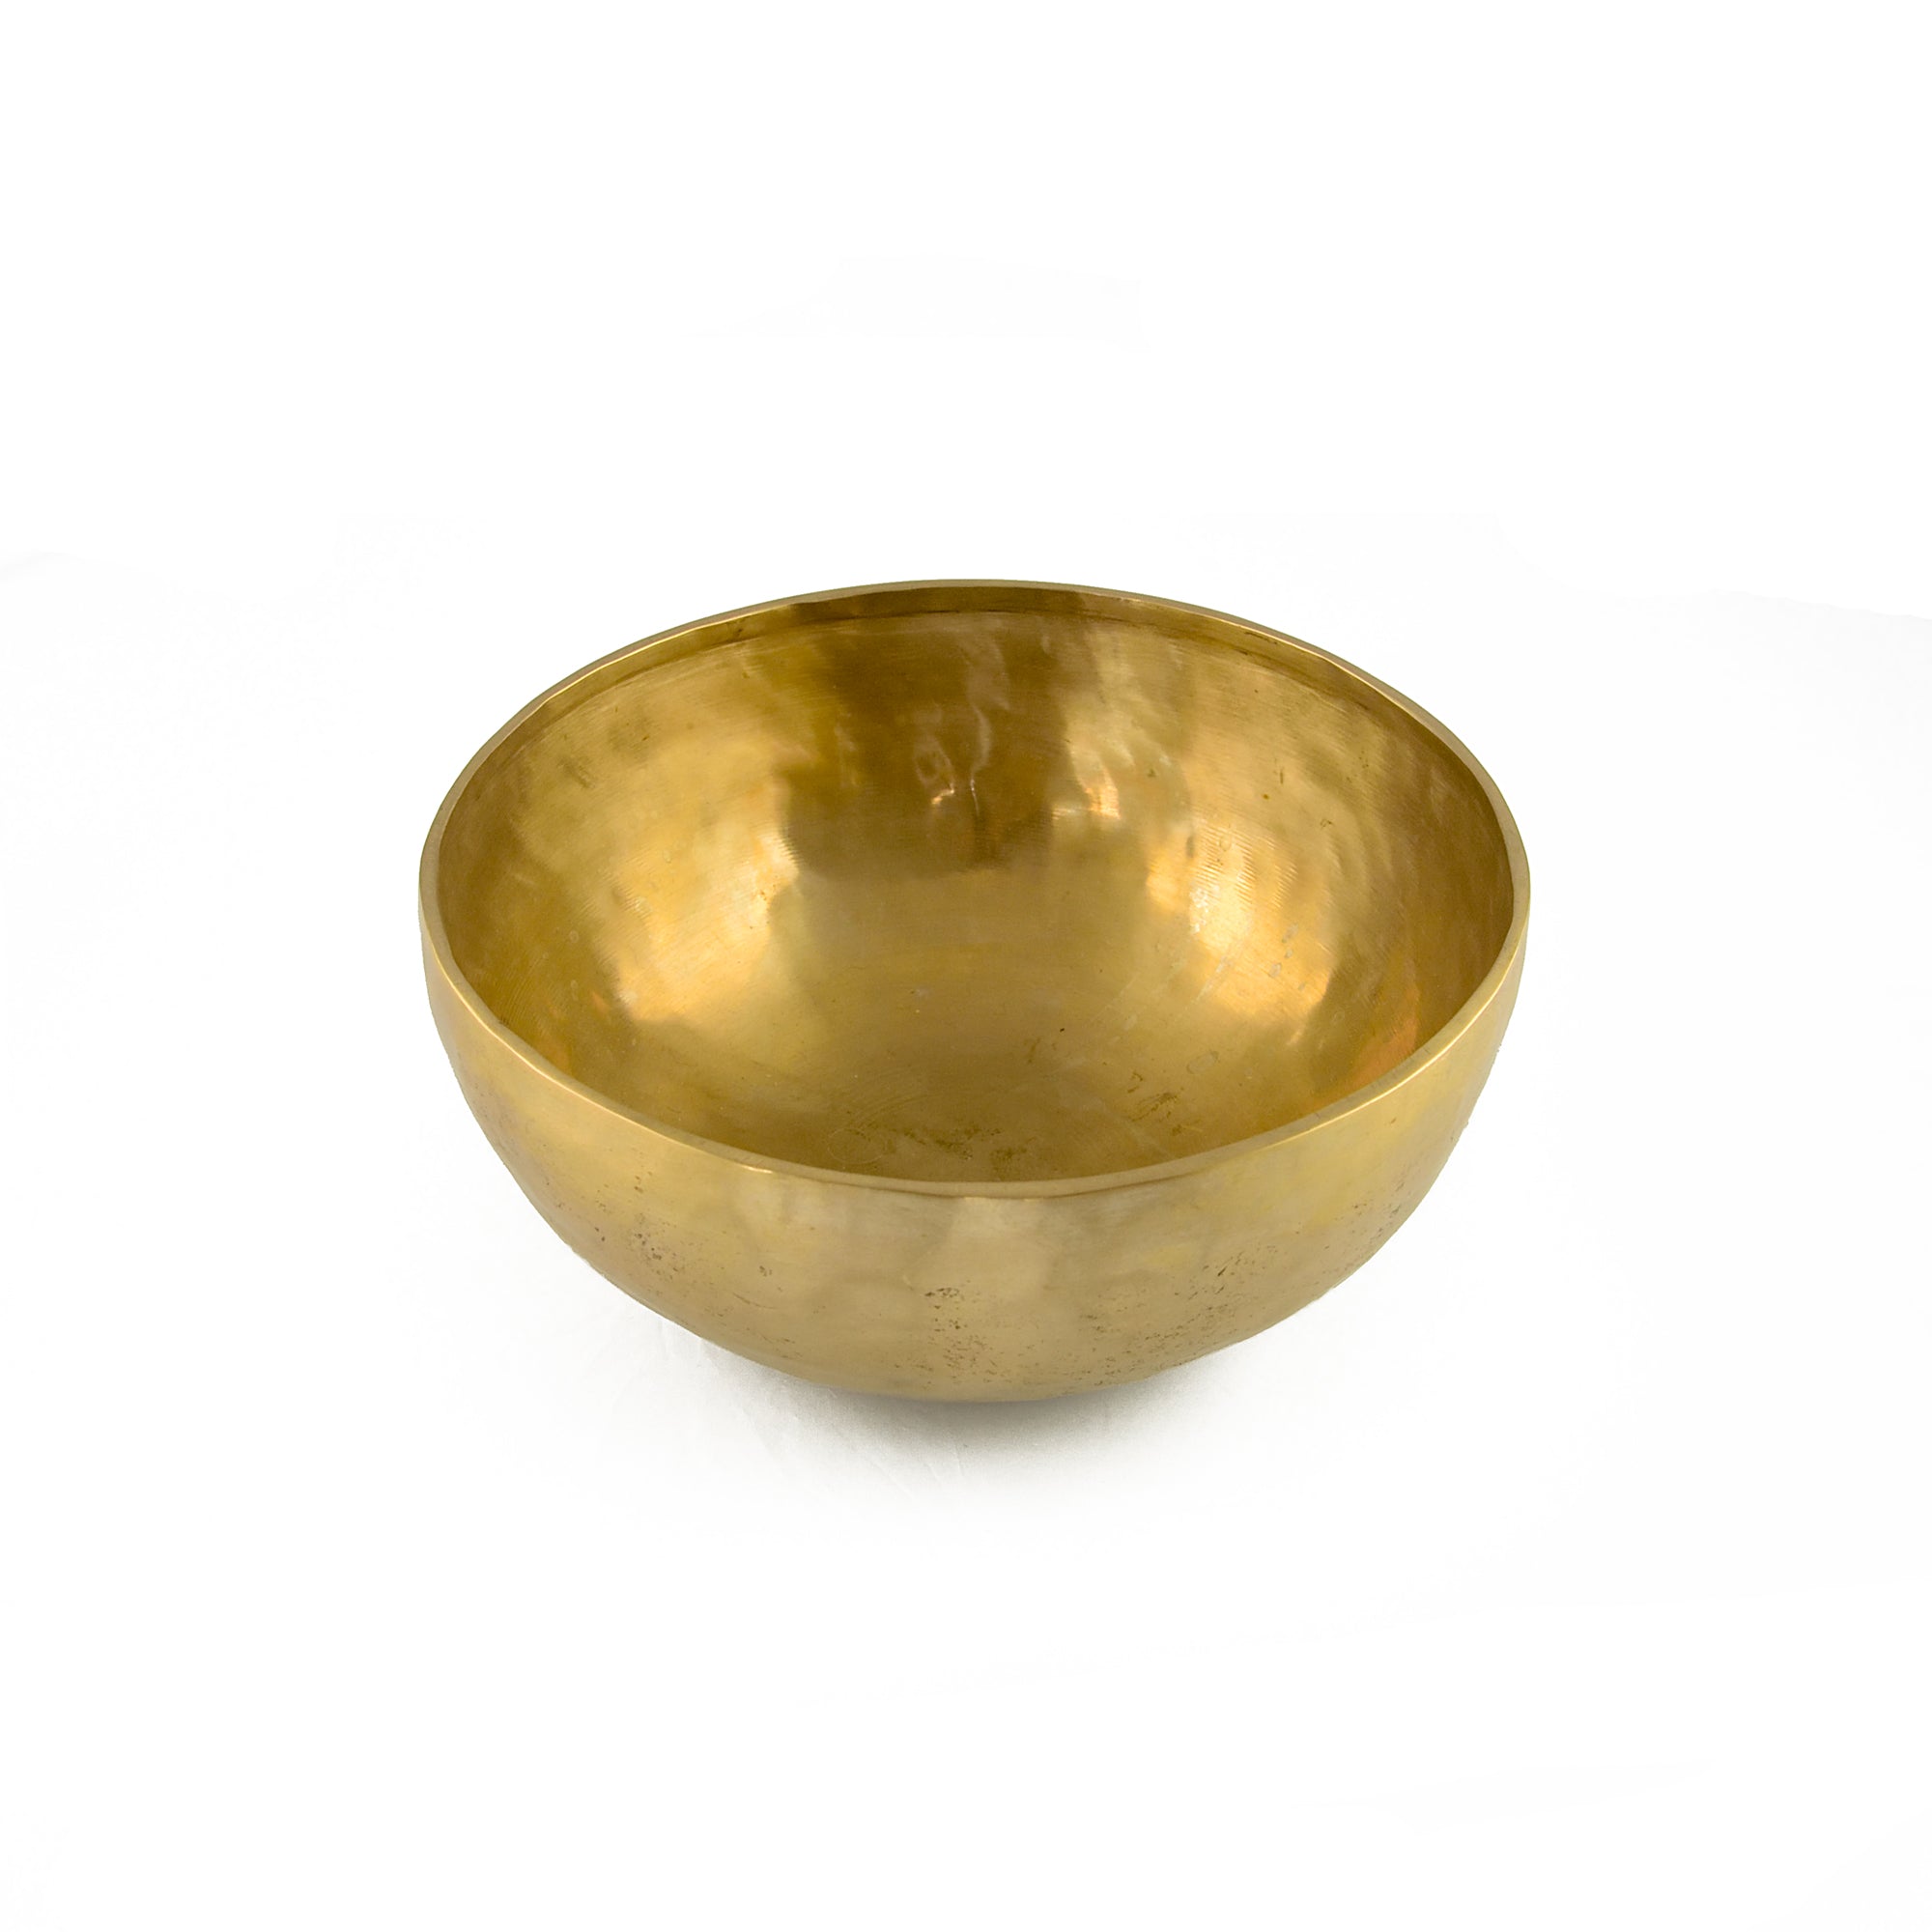 Tibetan Singing Bowl (Small/Medium) 530-749 gm